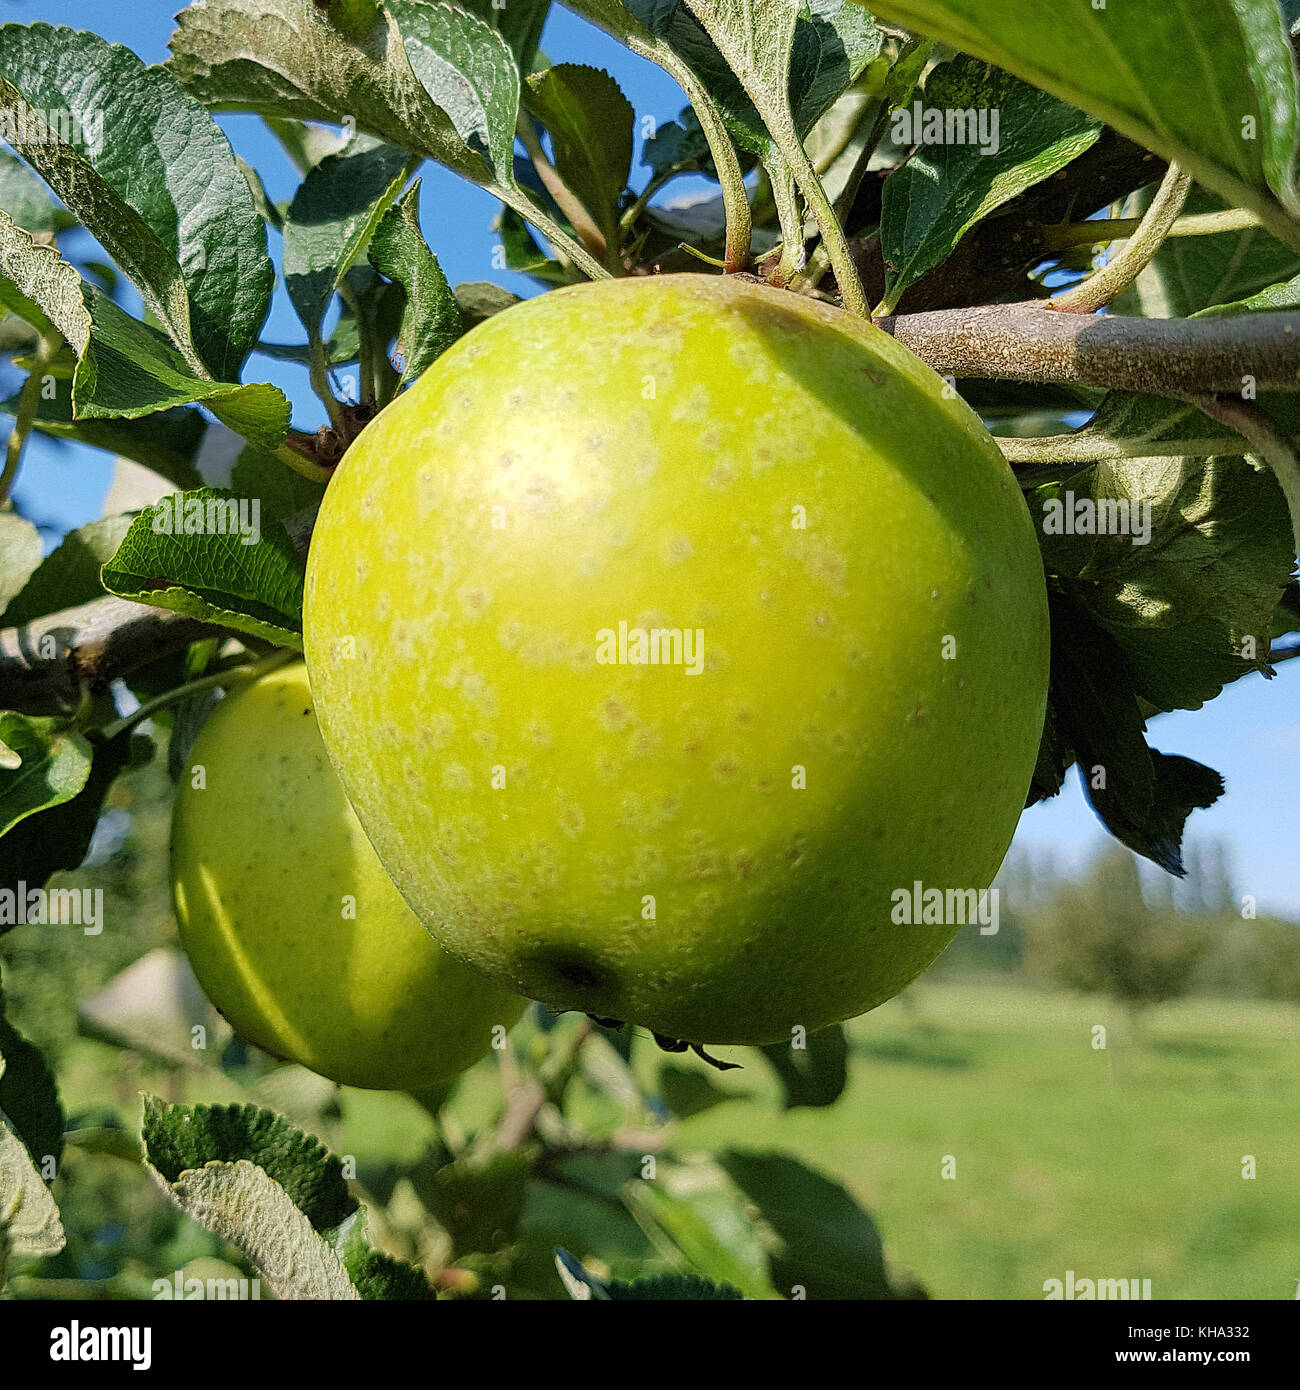 Ananasrenette, Herzapfel, Apfel, Malus, domestica, Alte Apfelsorte Stock Photo